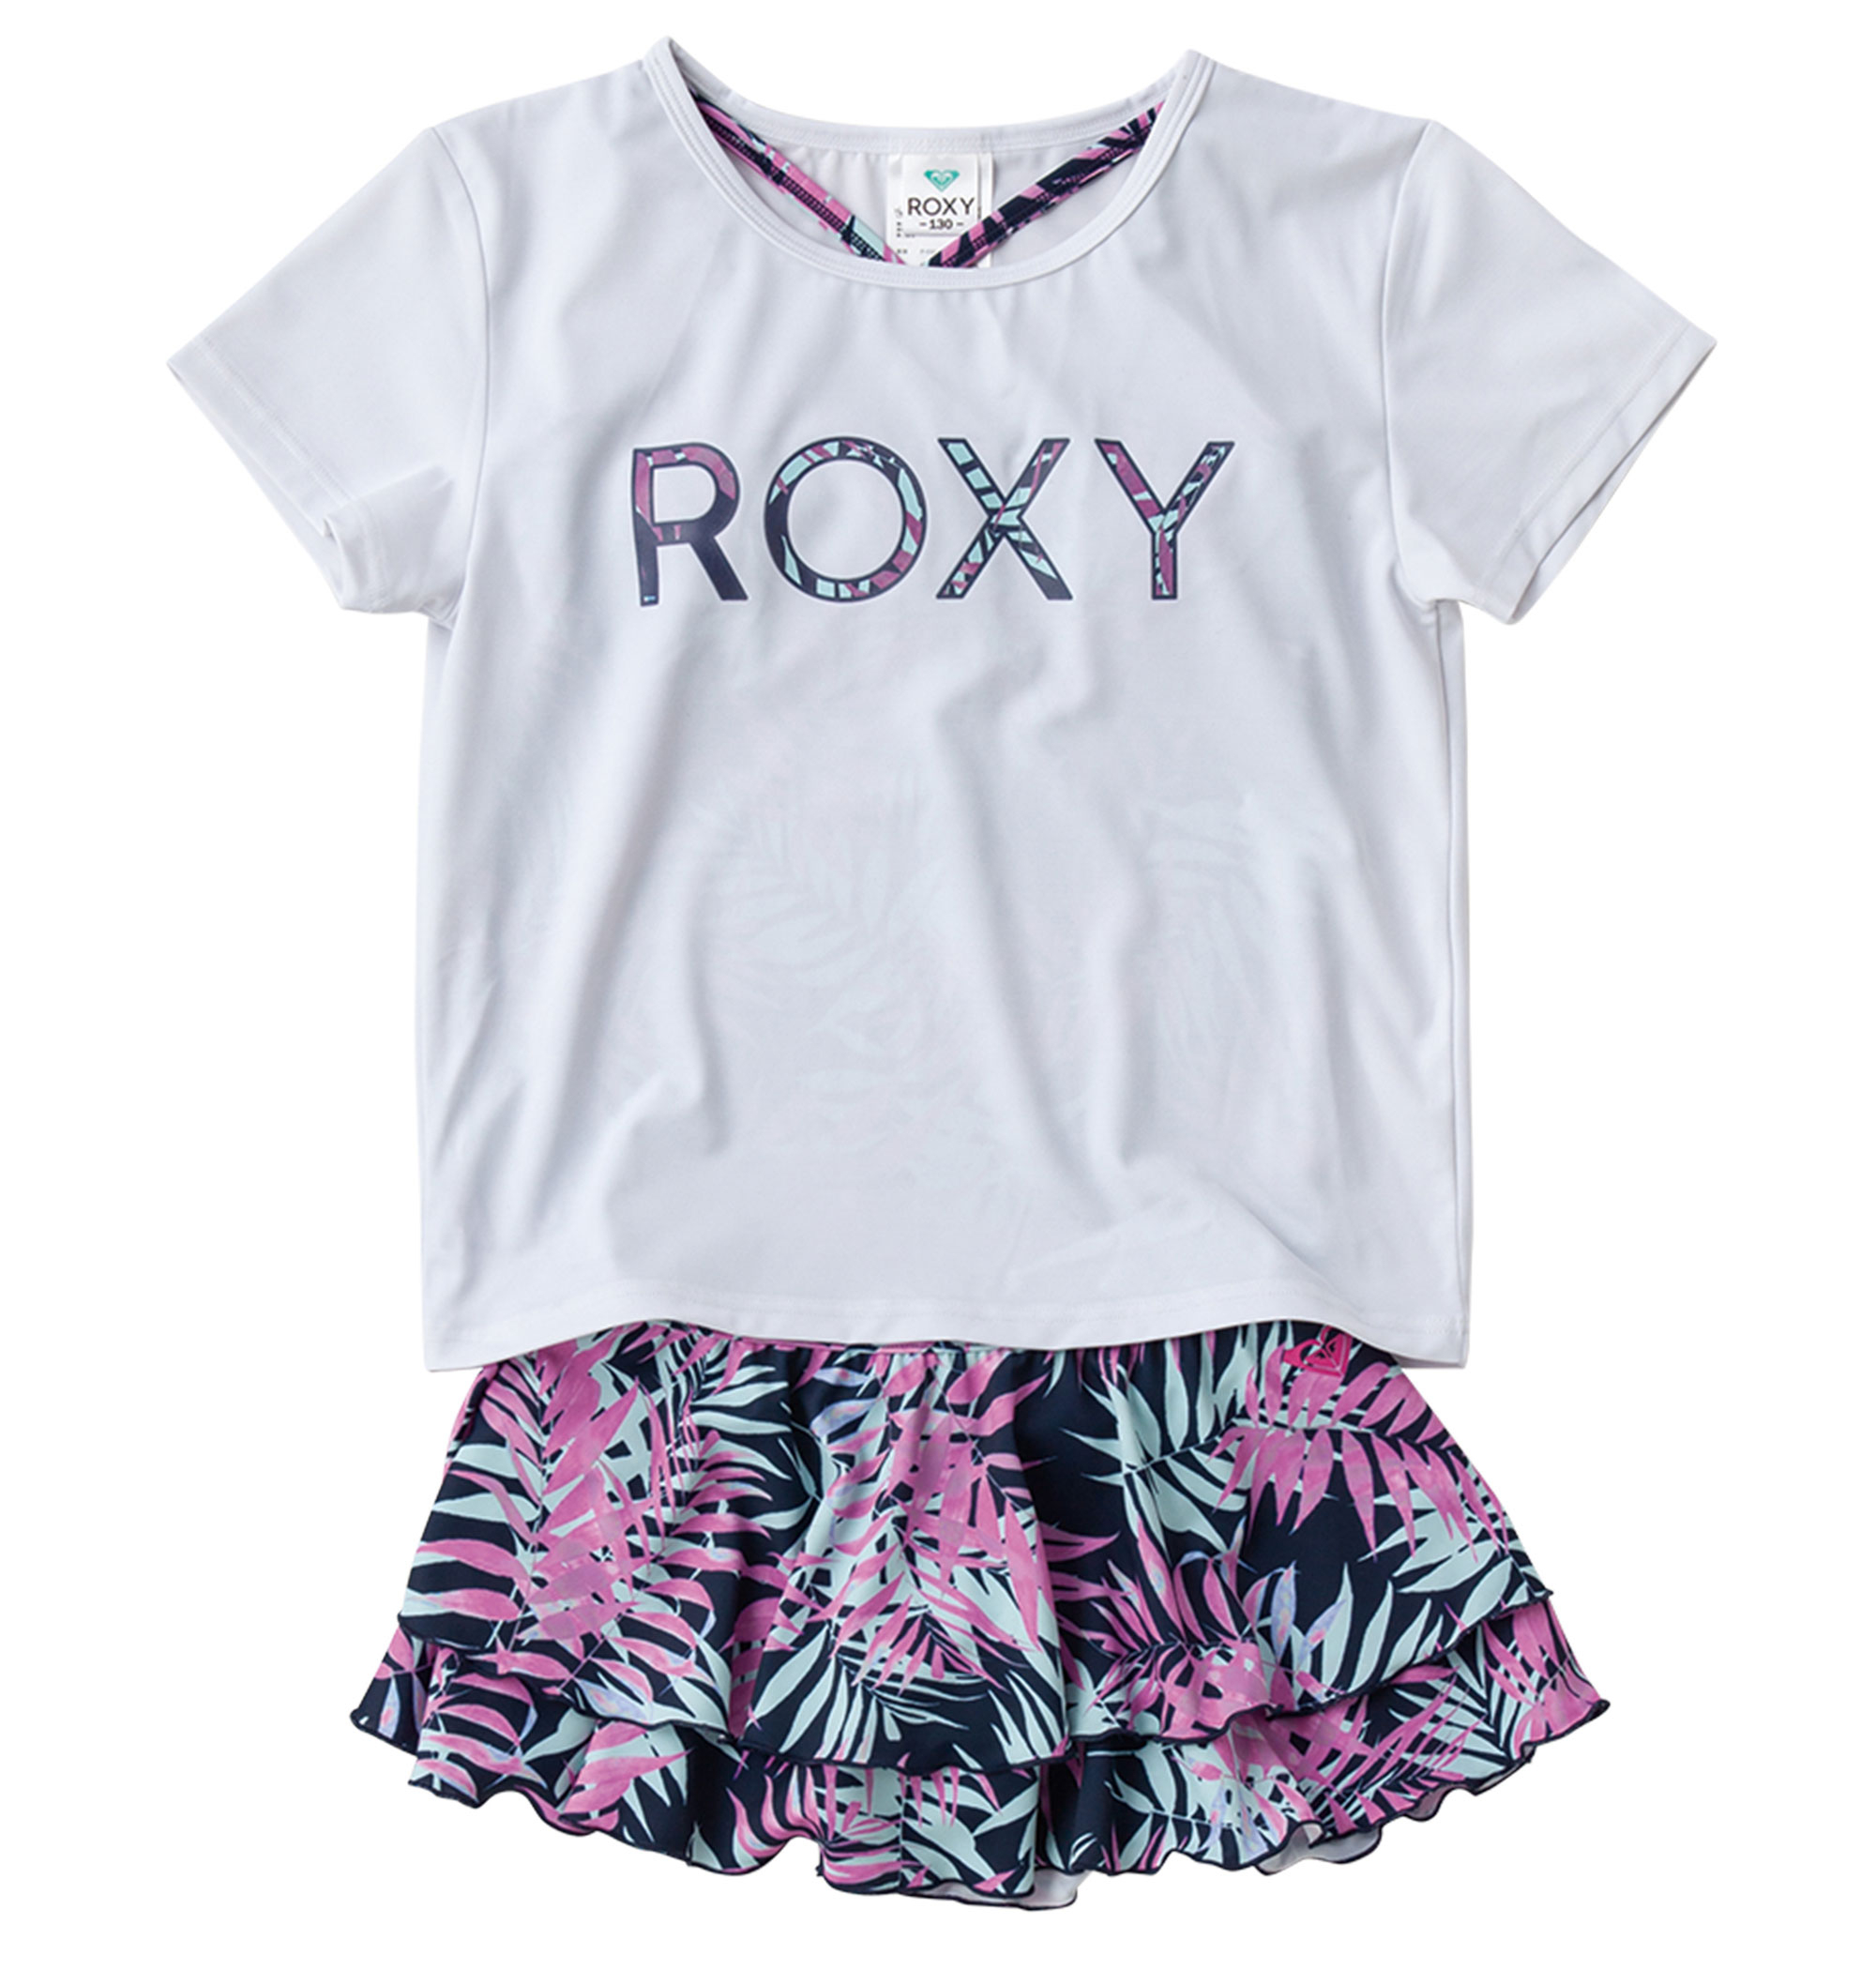 ＜Roxy＞MINI LEAF WAVE ボタニカル柄のセパレート水着と、同柄のロゴをフロントにプリントしたTシャツのセット